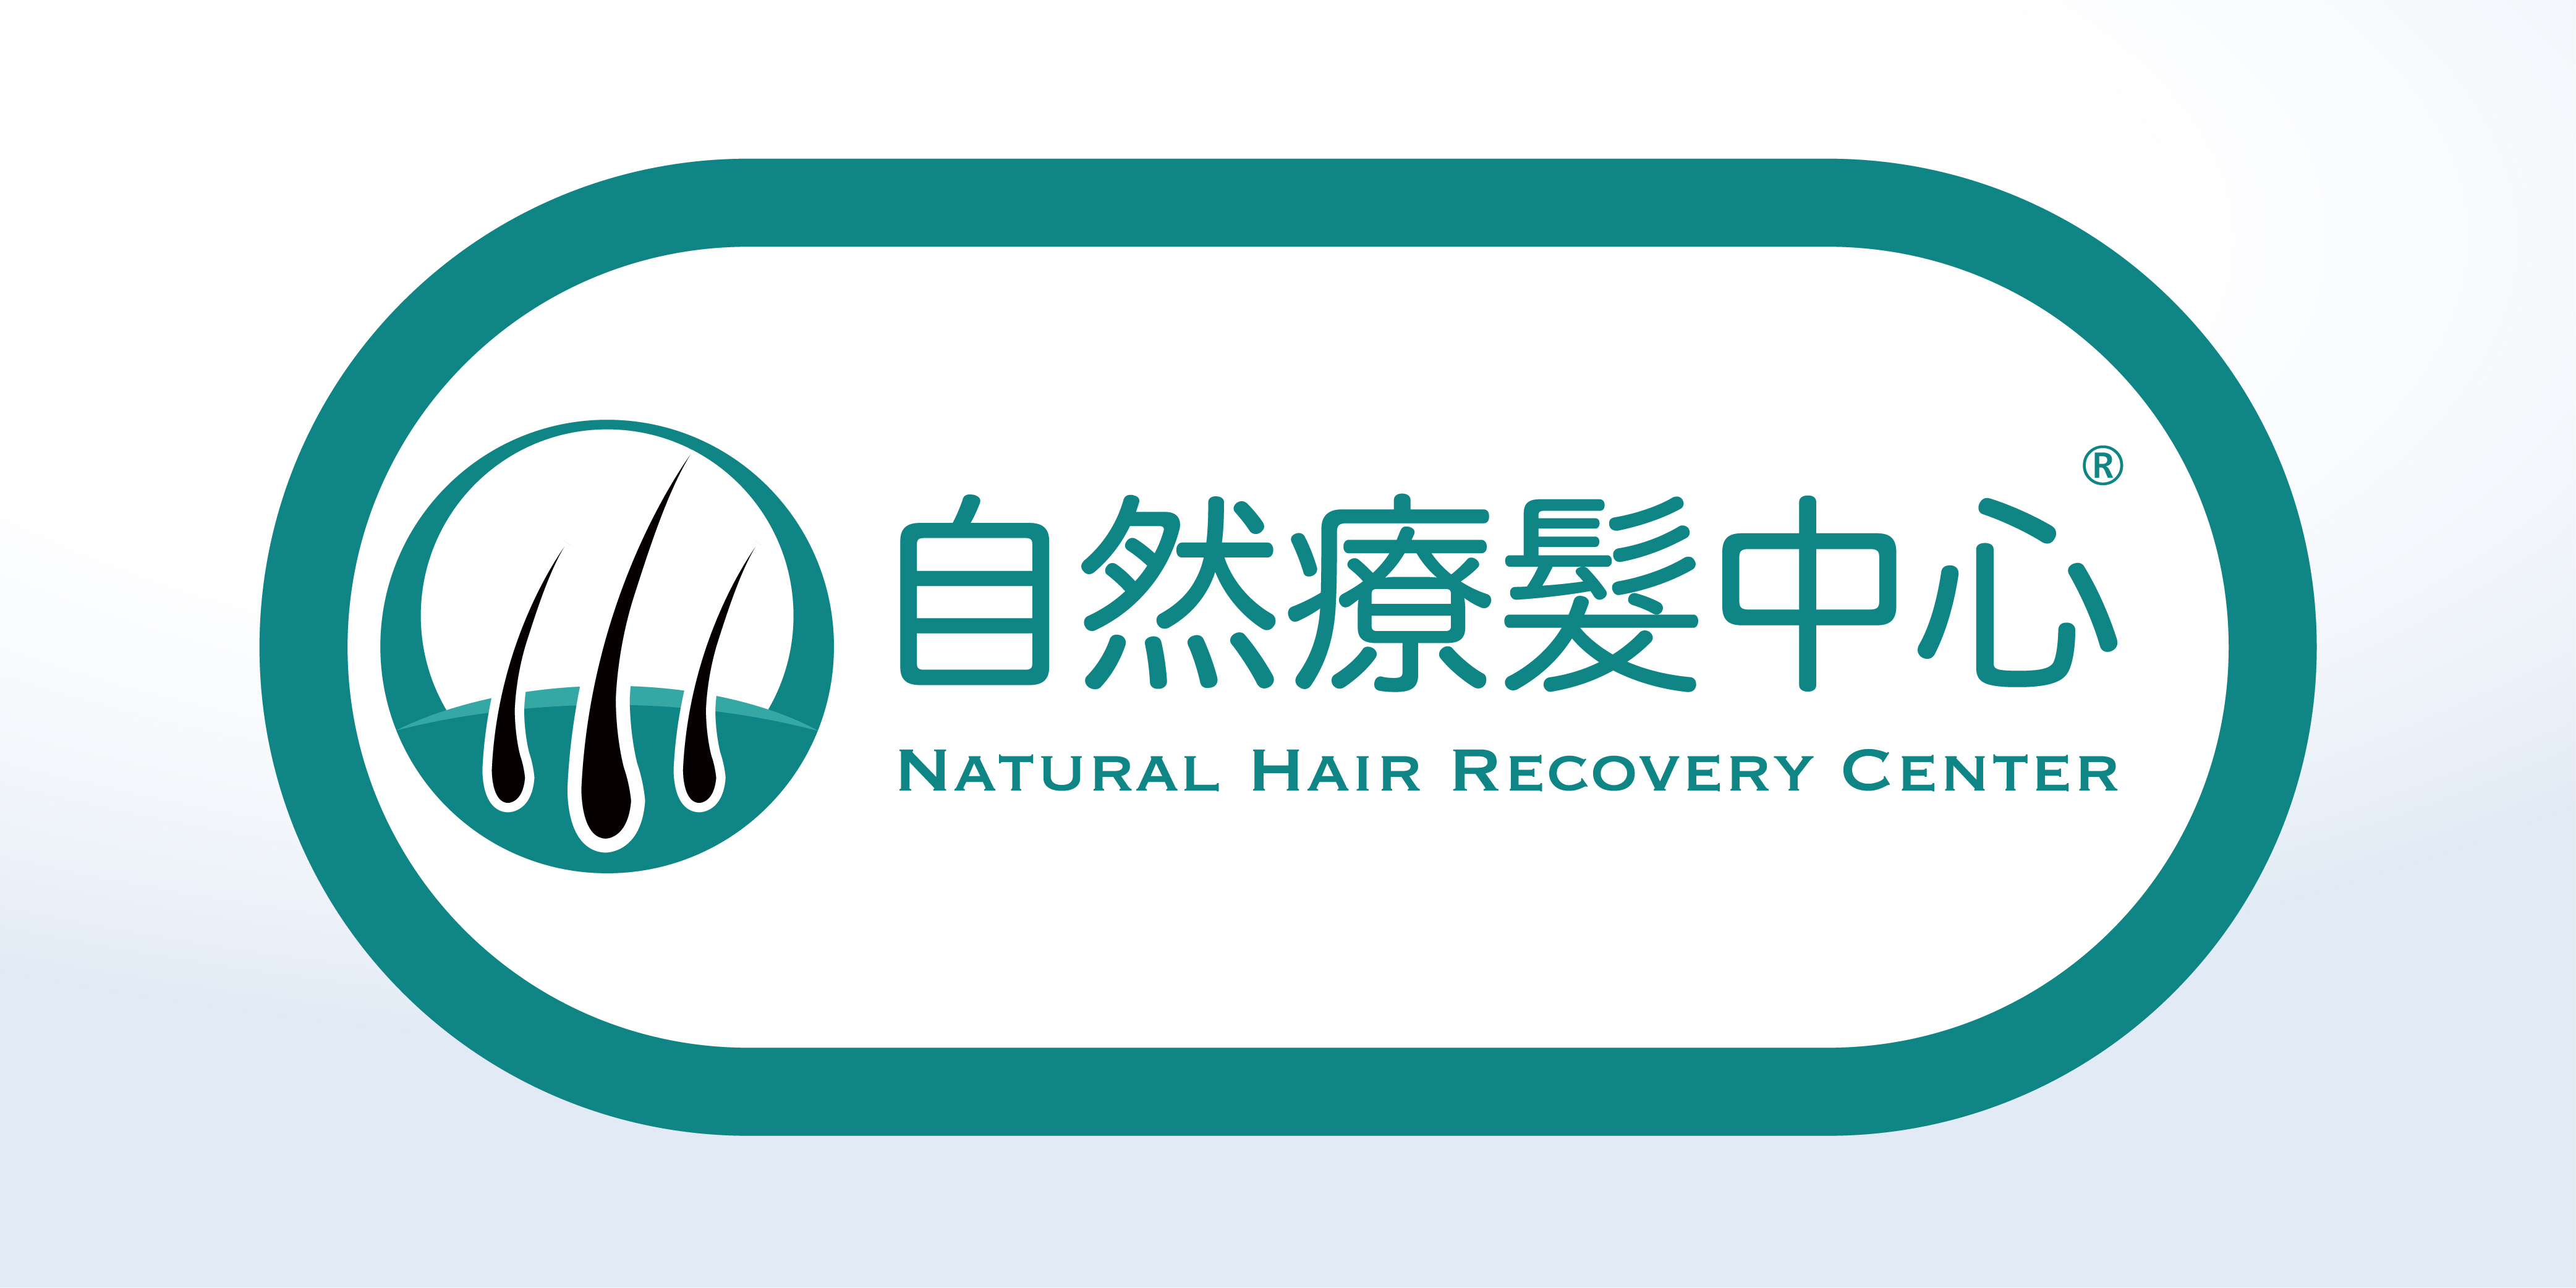 植髮/駁髮: 自然療髮中心 Natural Hair Recovery Center ®